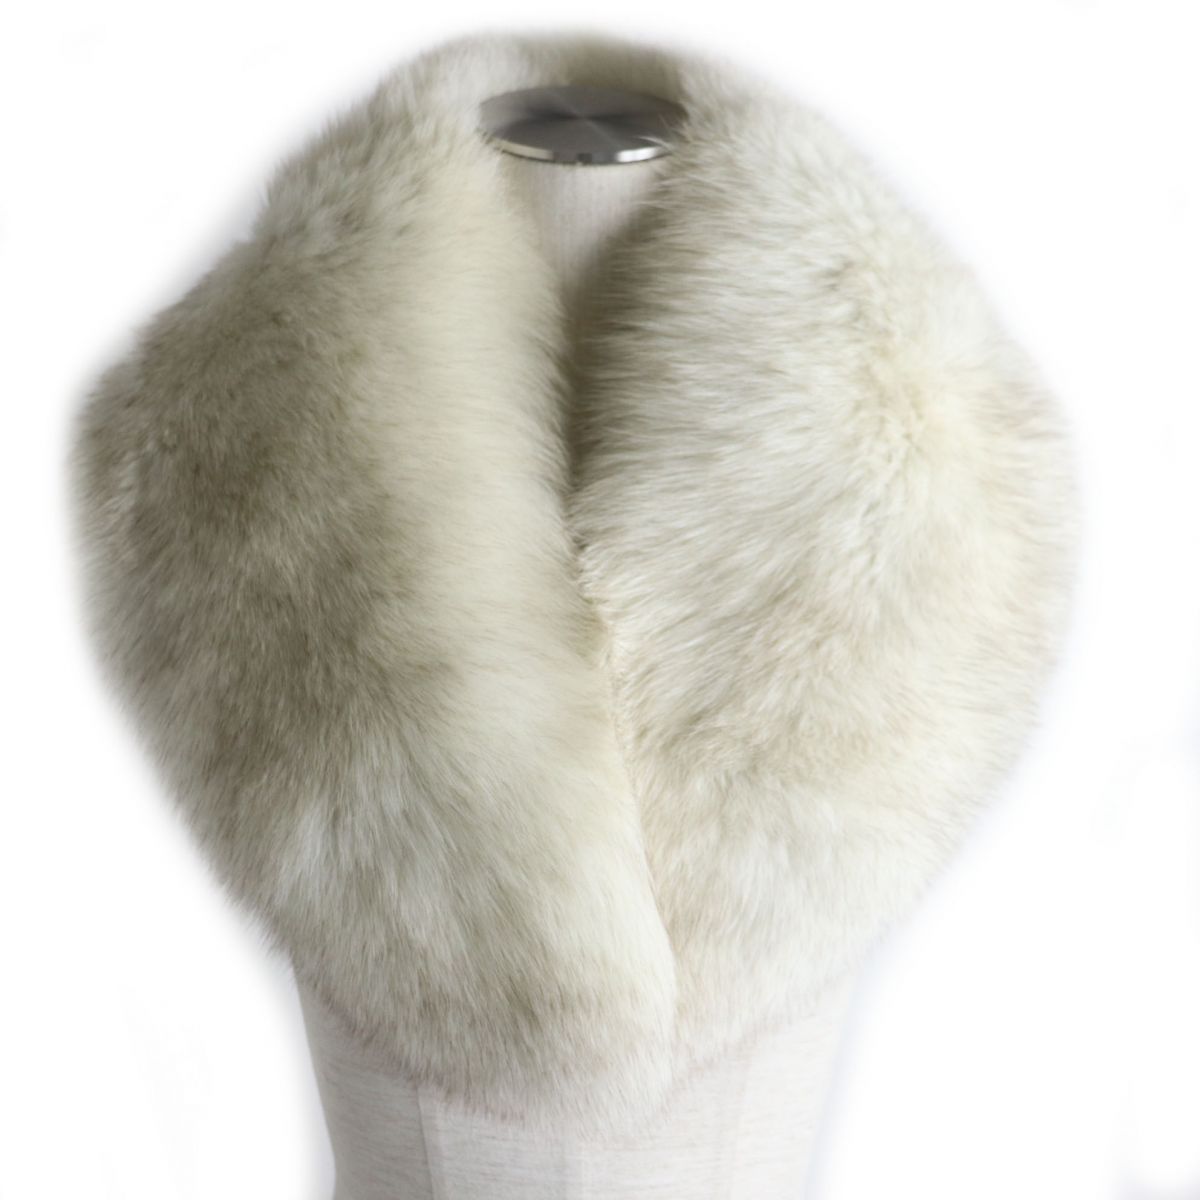 激安超特価 極美品 SAGA FOX サガフォックス 本毛皮ティペット ショール ストール ボリューム 2021新作モデル ホワイト×ブラウン 中古 毛質柔らか